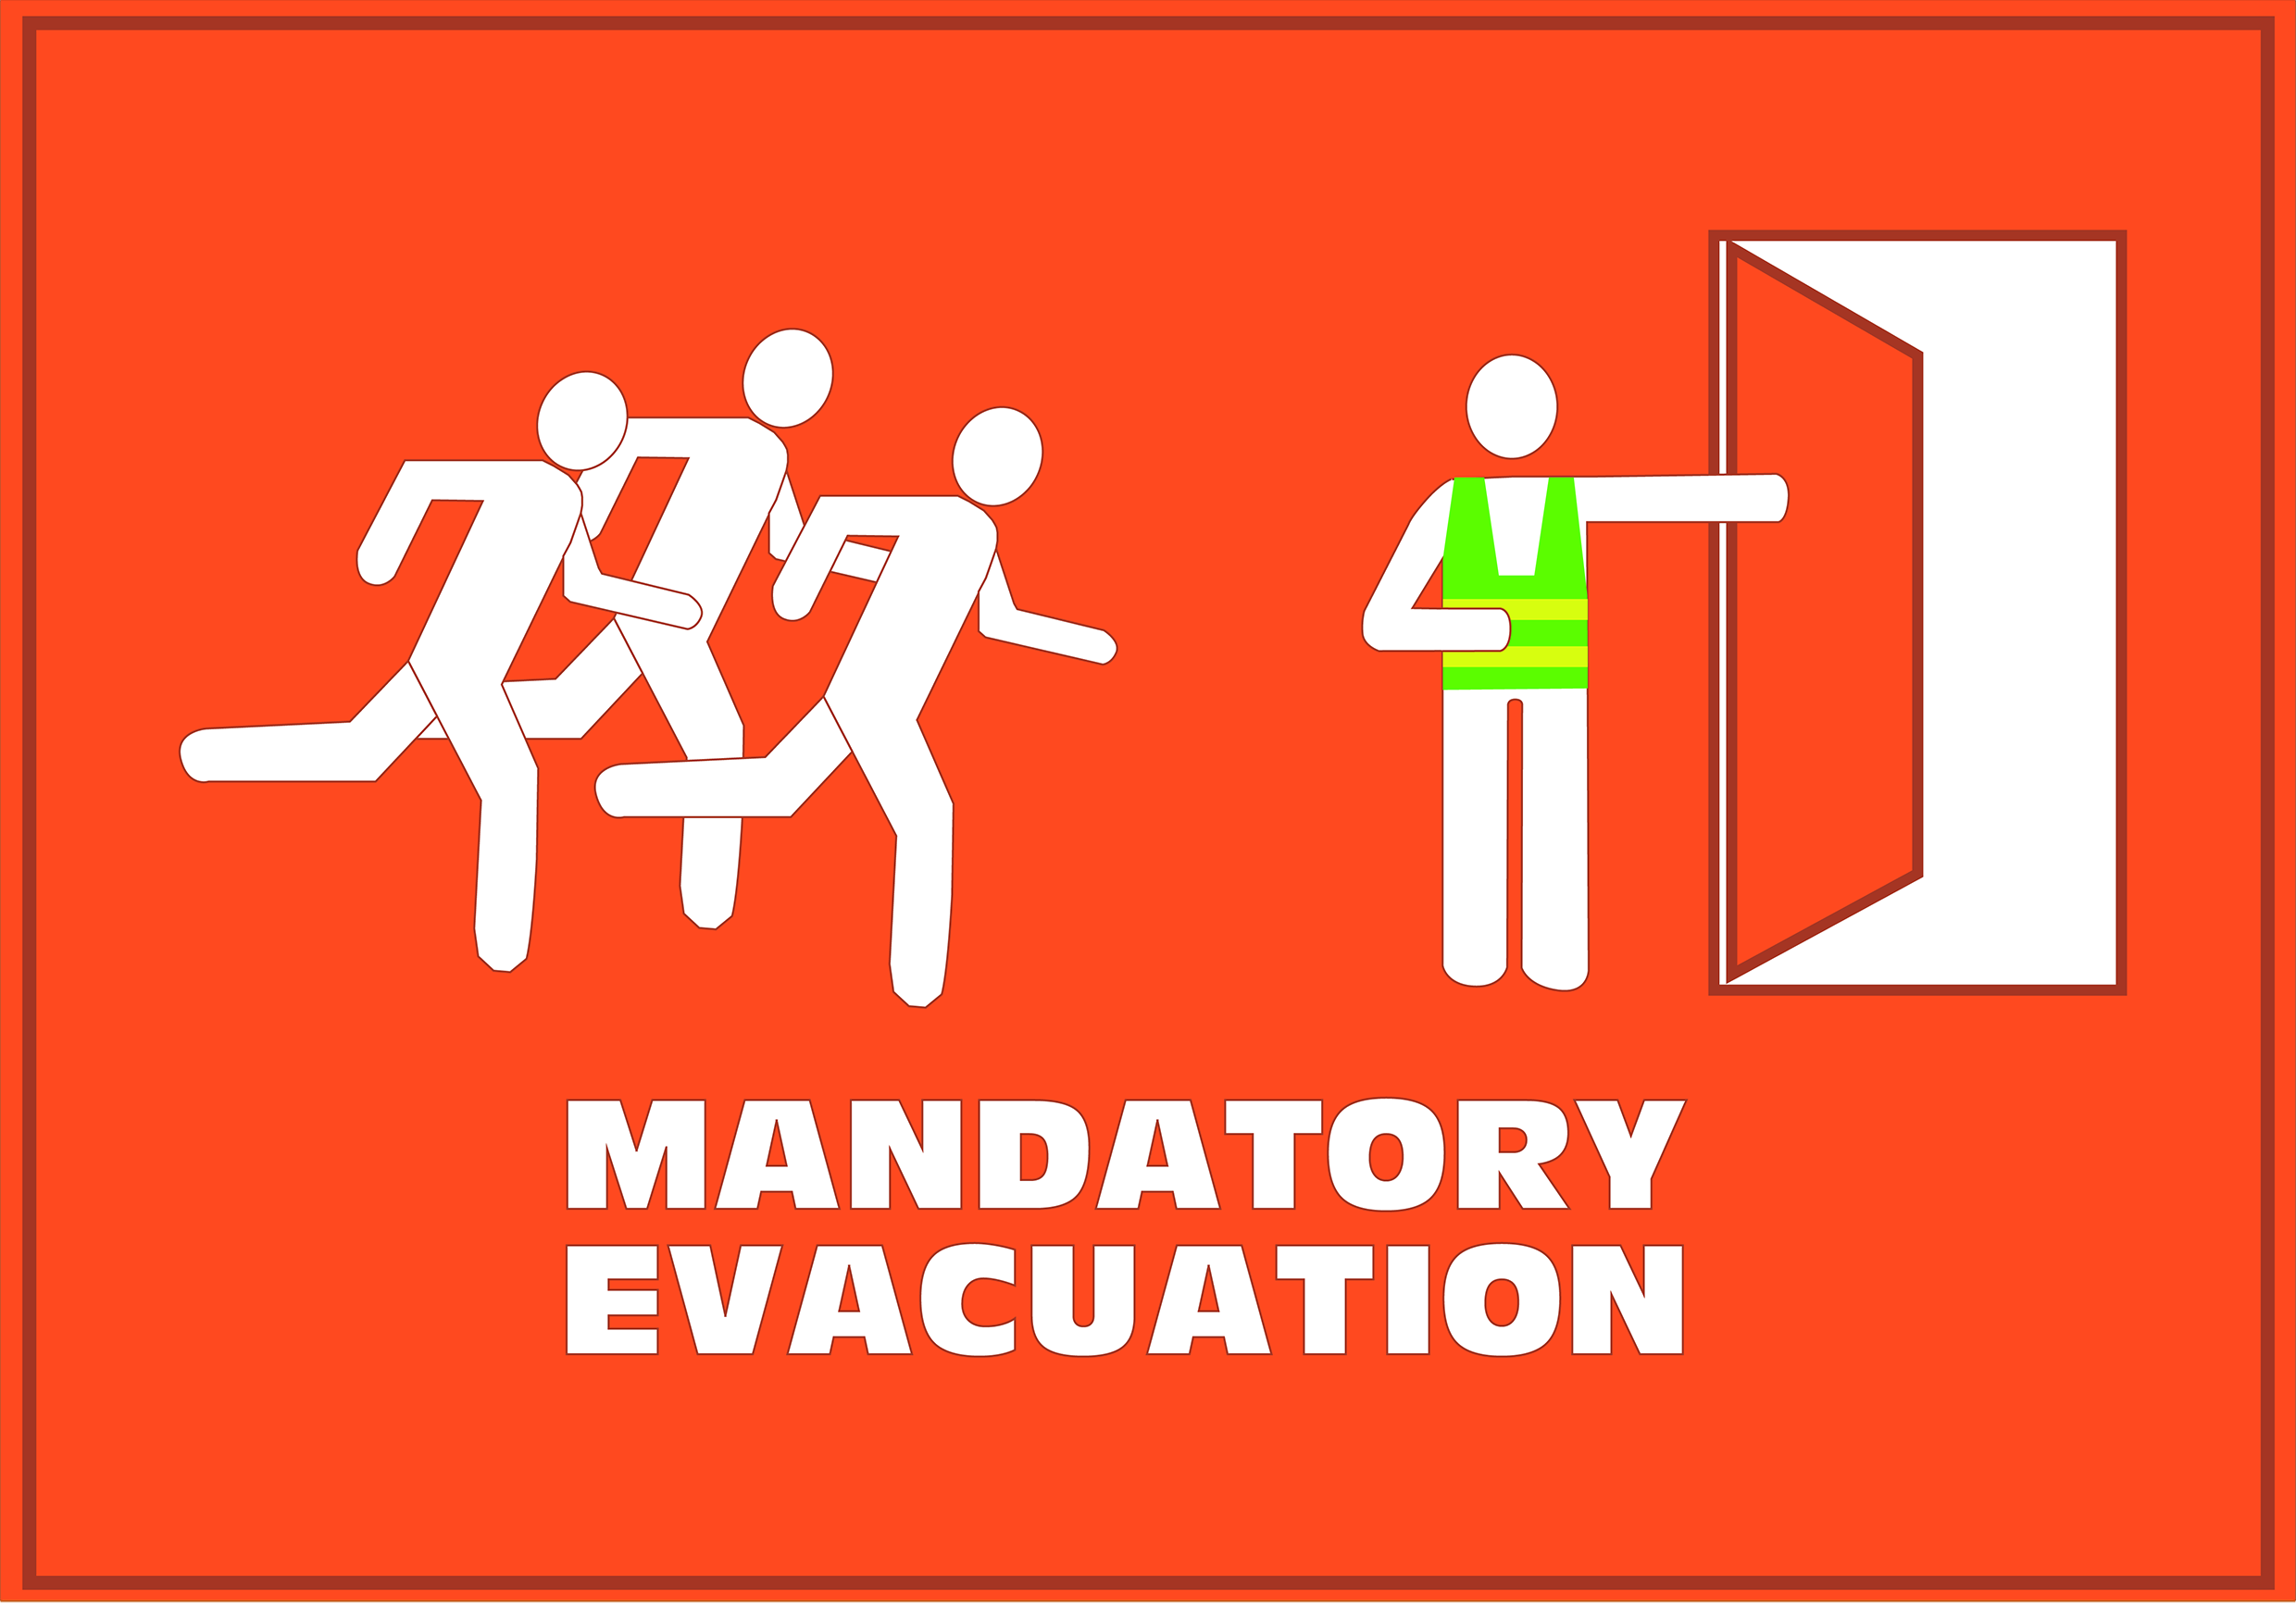 Figure 4.4.1.3 Mandatory Evacuation